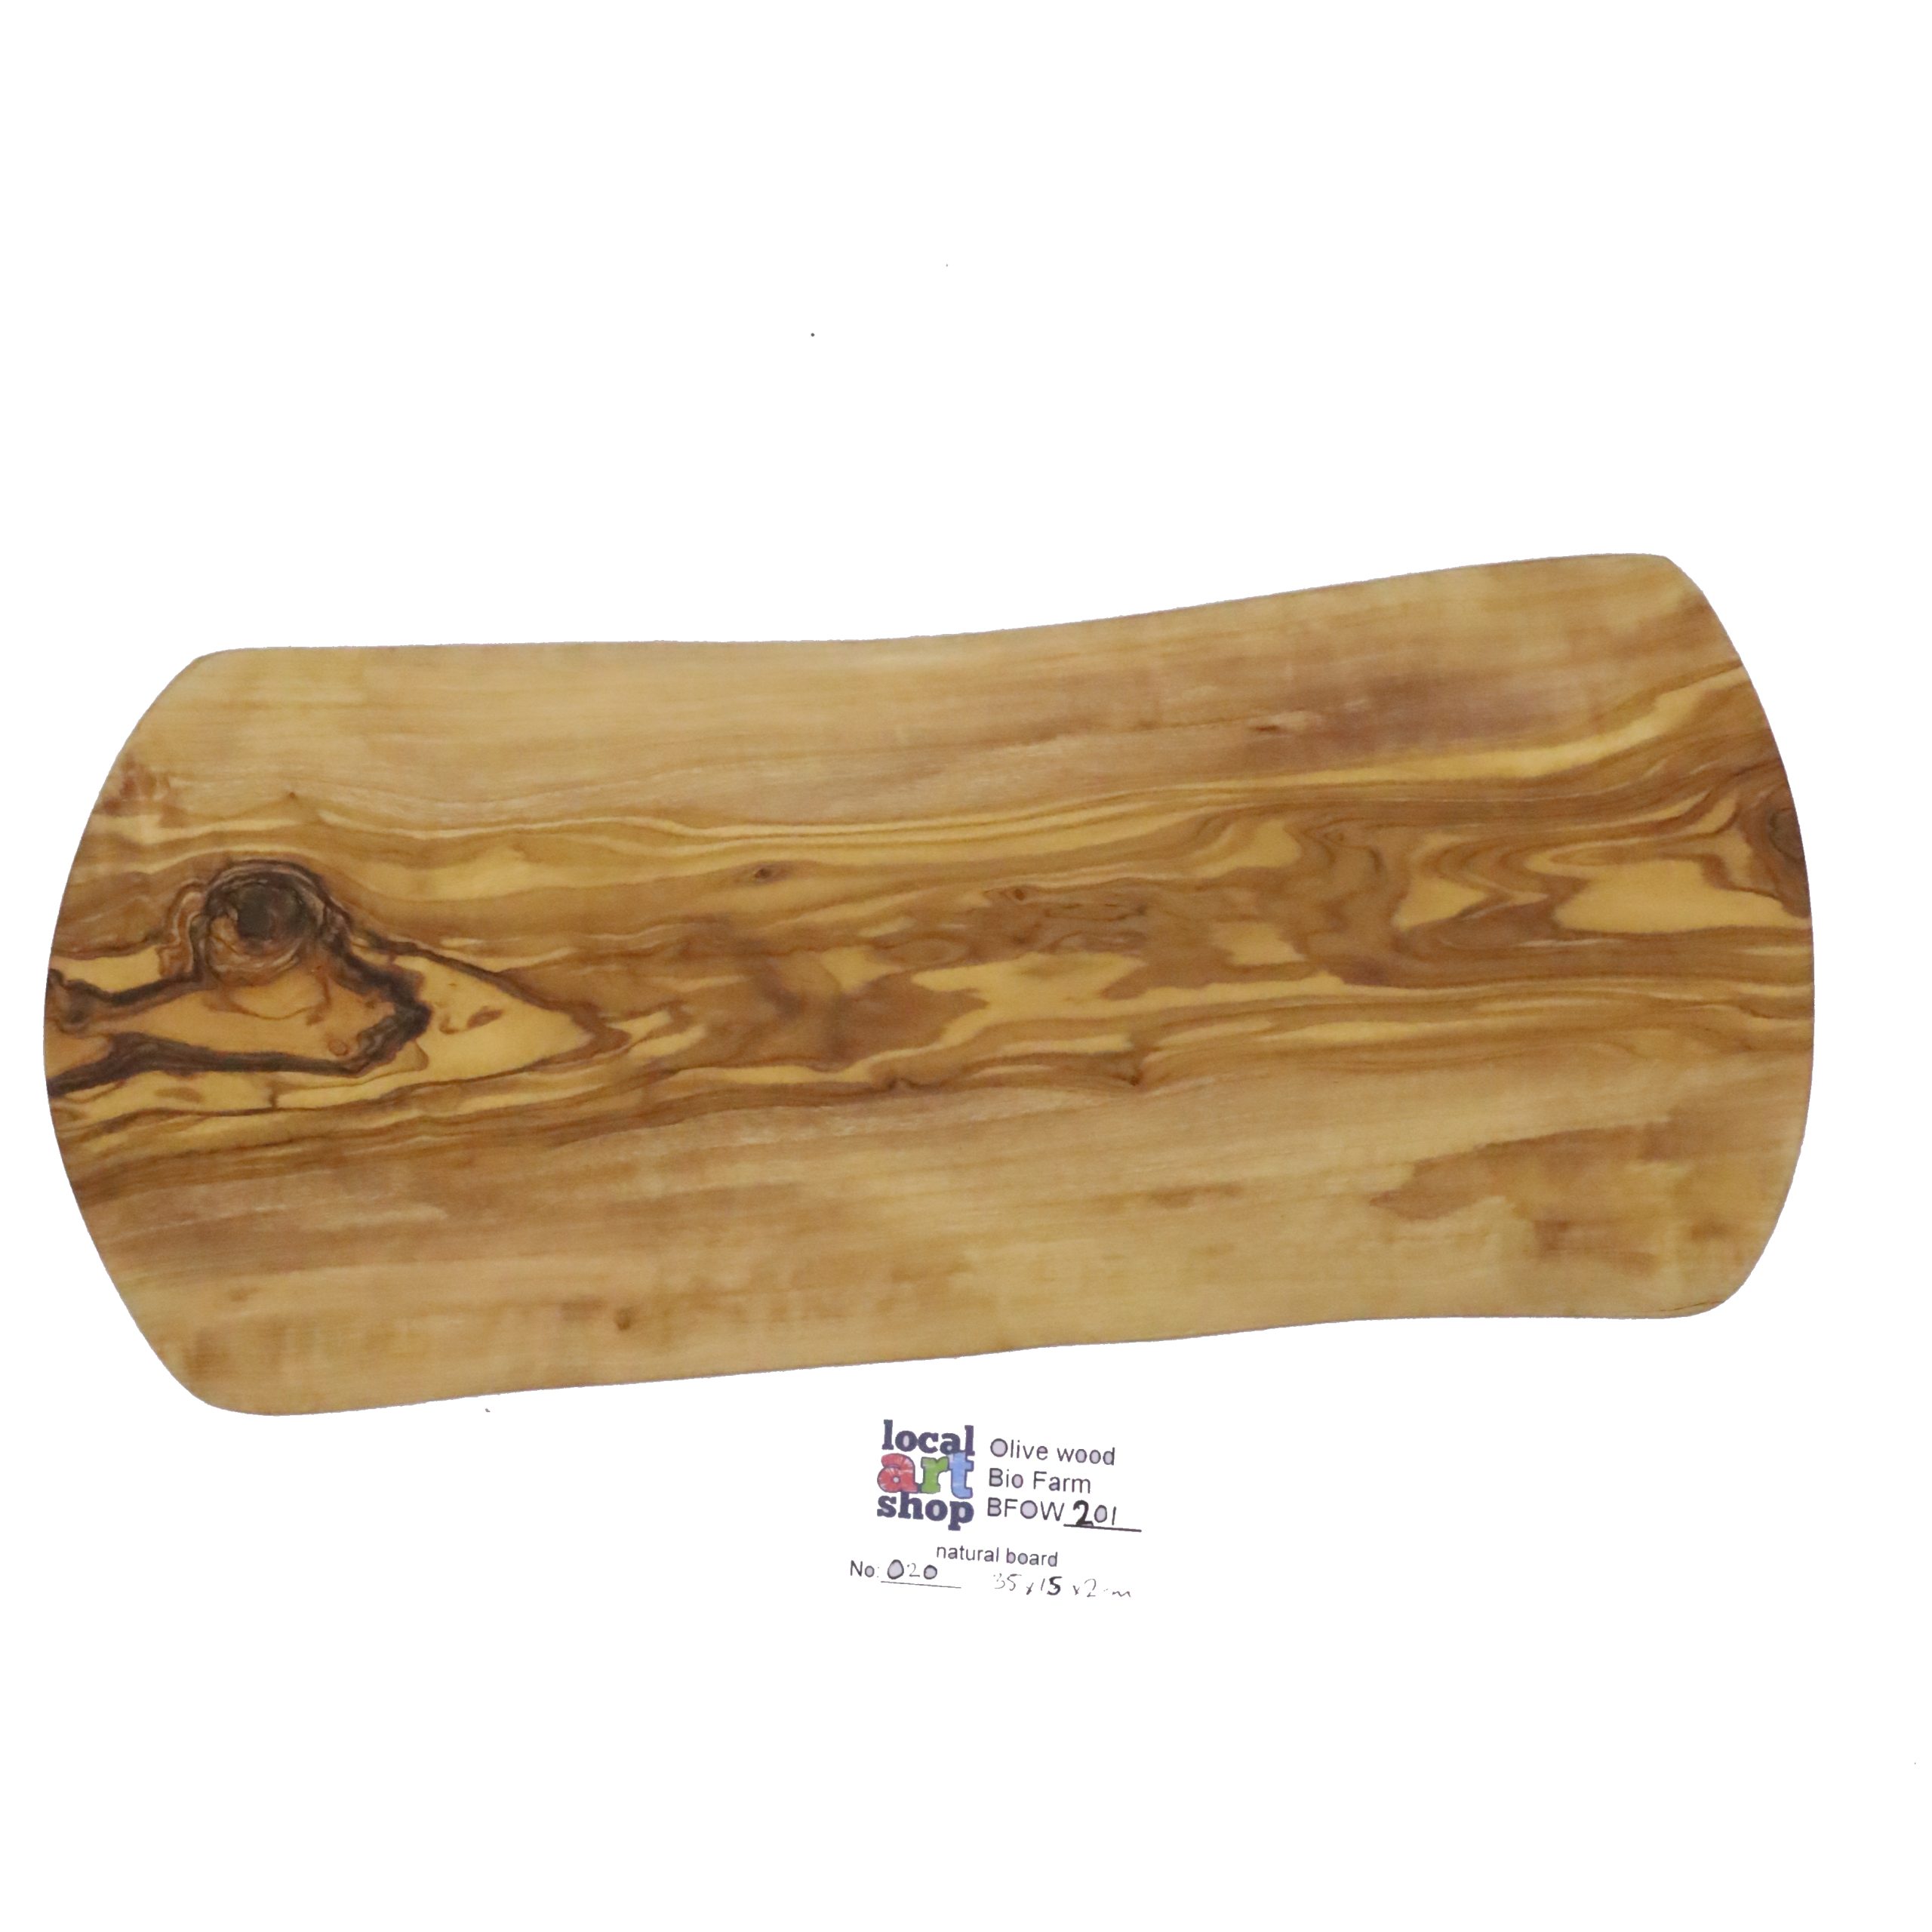 Olive wood natural board standard